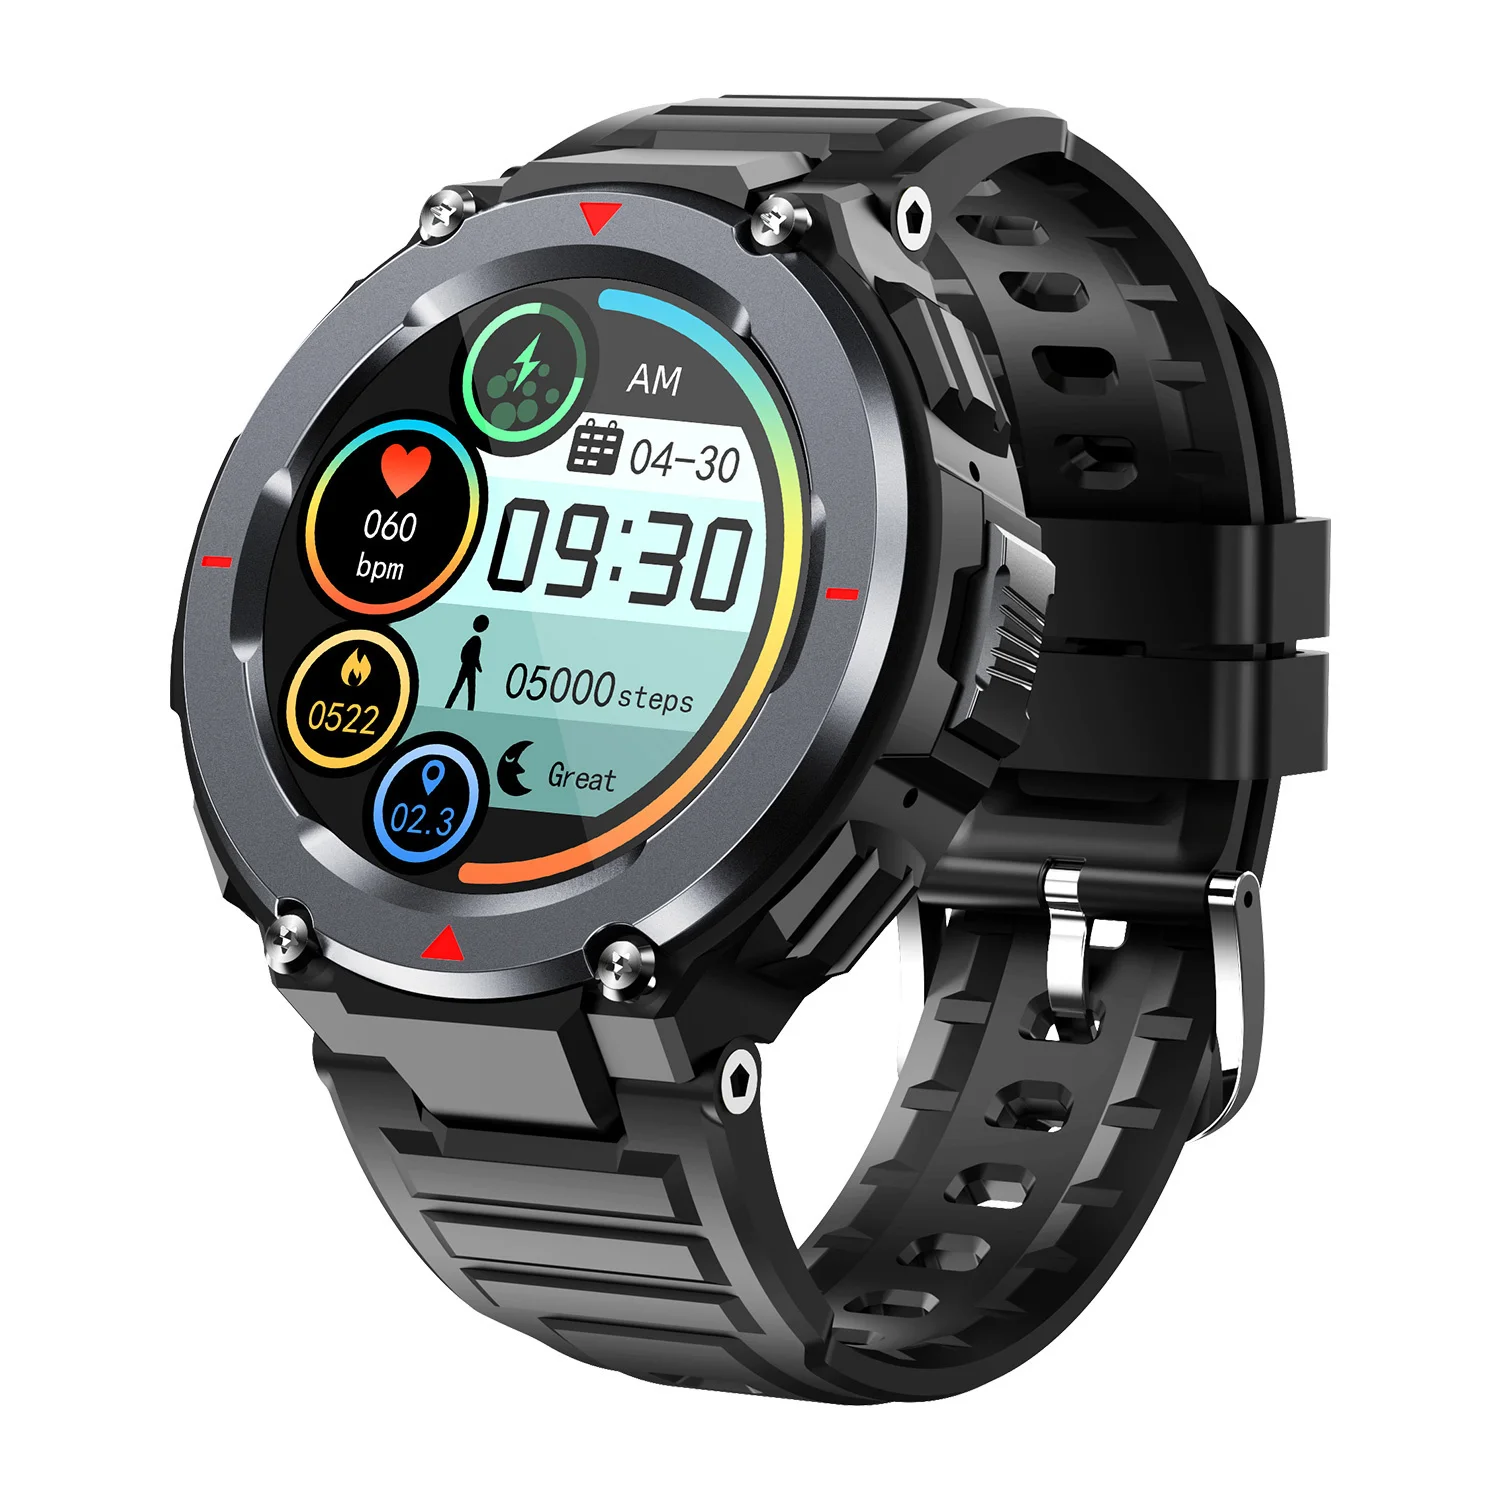 

Смарт-часы S25 мужские спортивные с поддержкой Bluetooth, звонков и проигрывания музыки